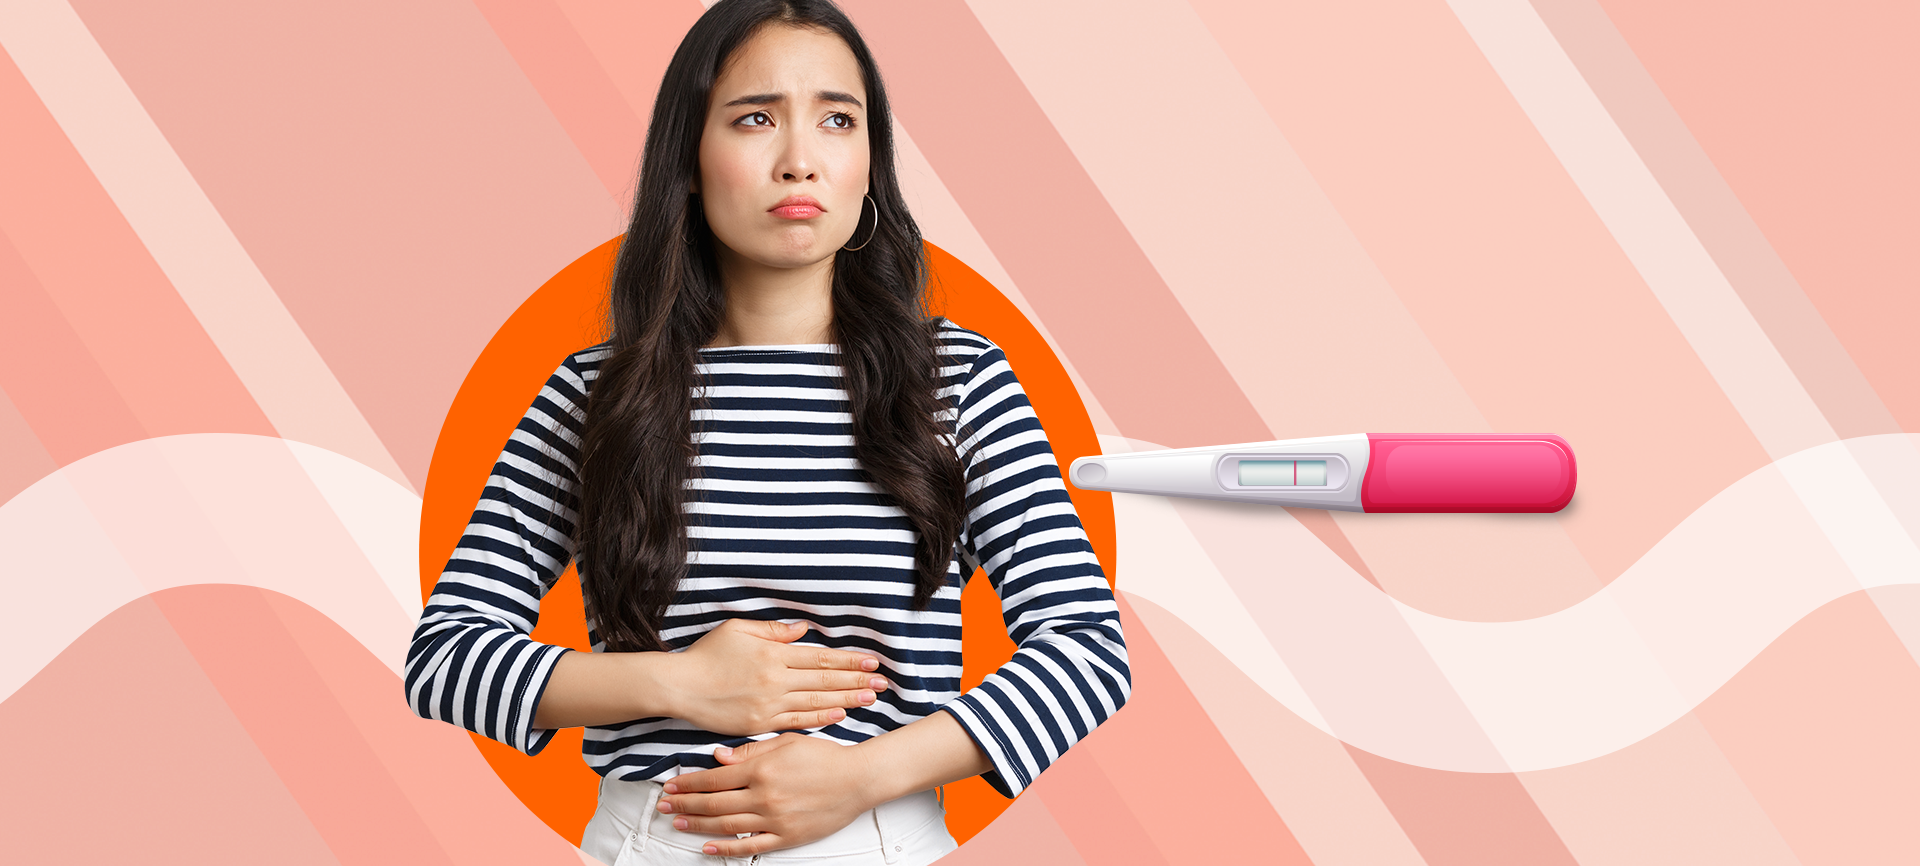 Endometriose superficial: saiba mais sobre a doença e sua relação com a infertilidade